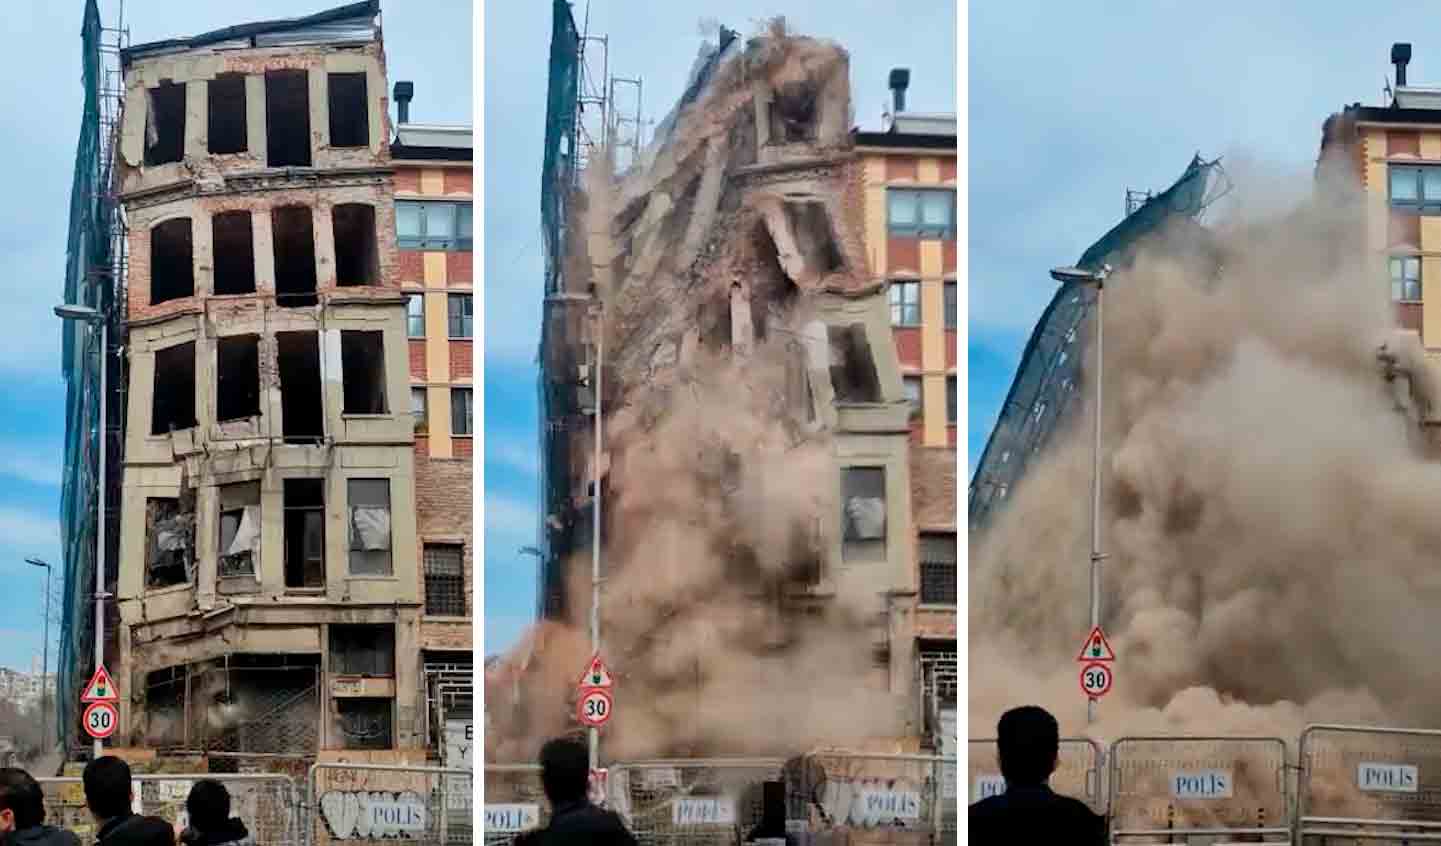 Vídeo mostra o momento em que prédio de 5 andares desabada em área de pedestres na Turquia